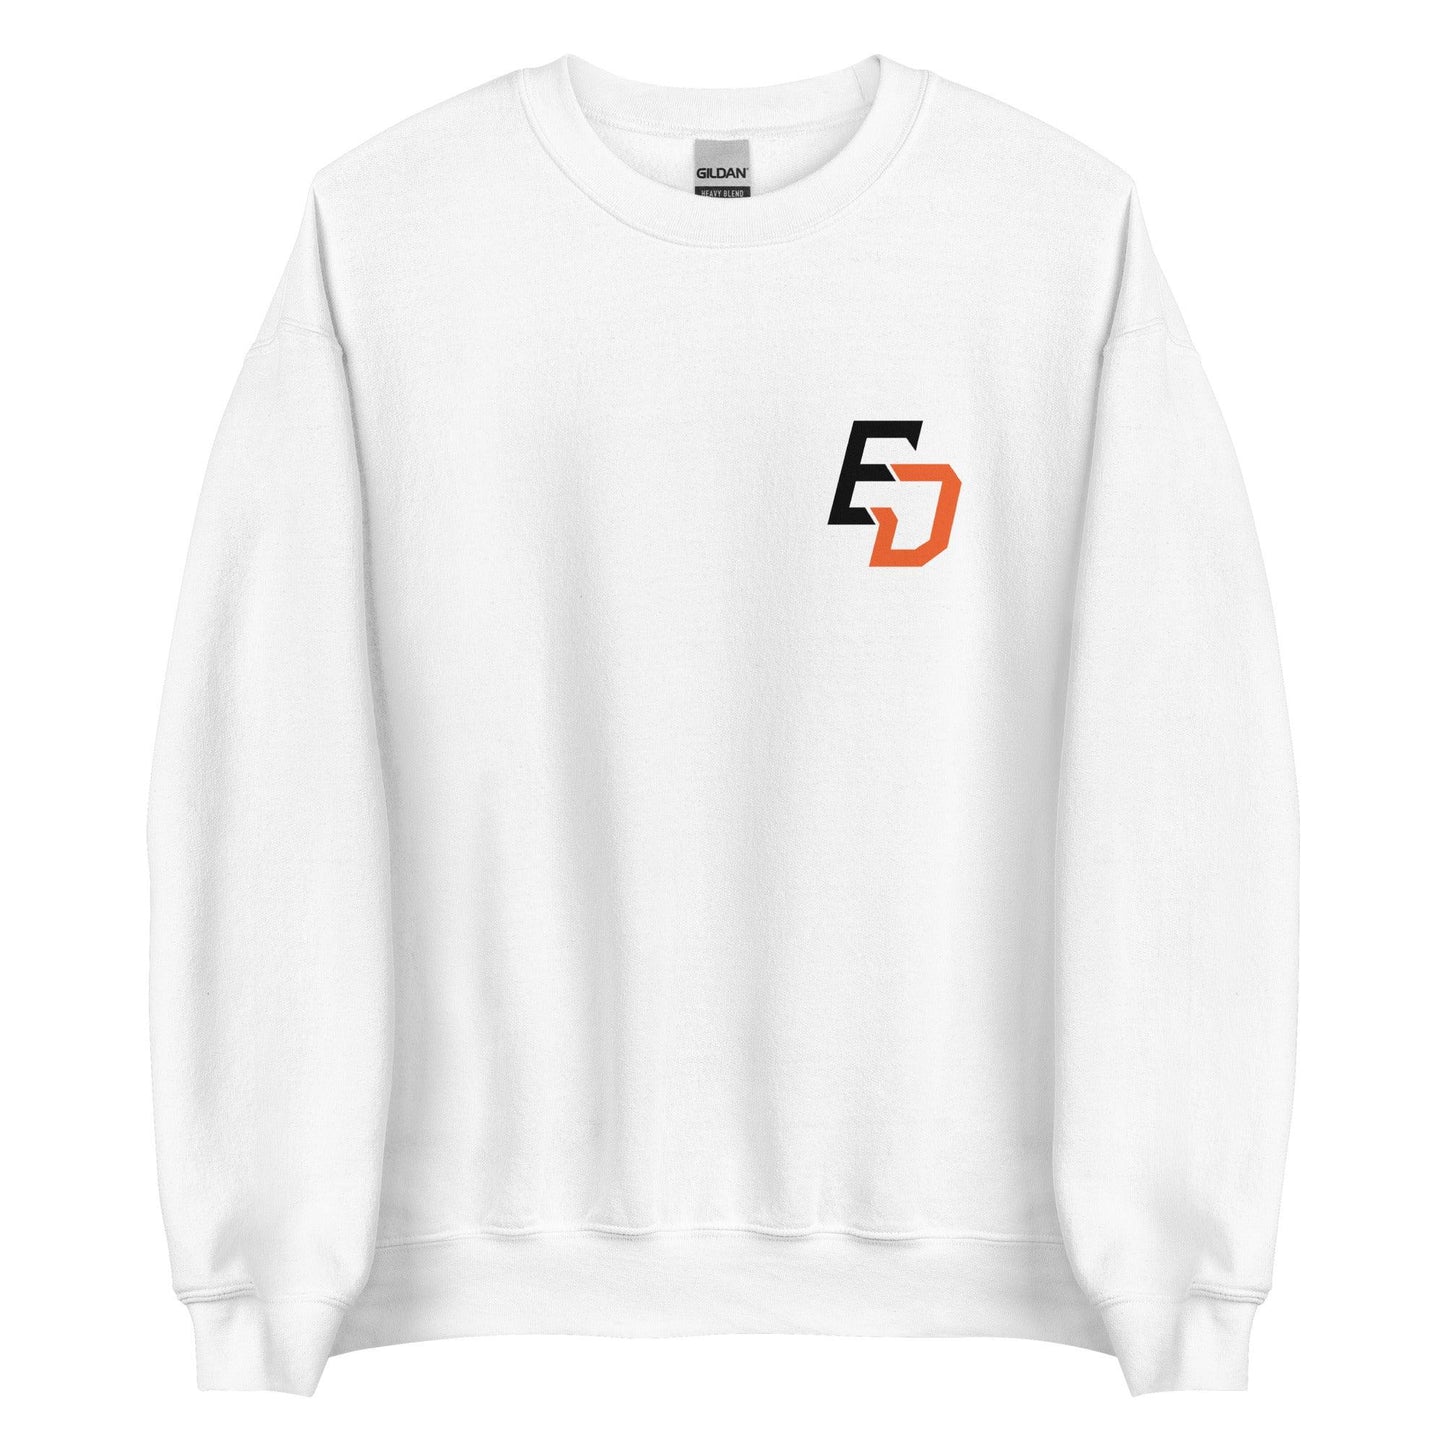 Ernie Day "Essential" Sweatshirt - Fan Arch